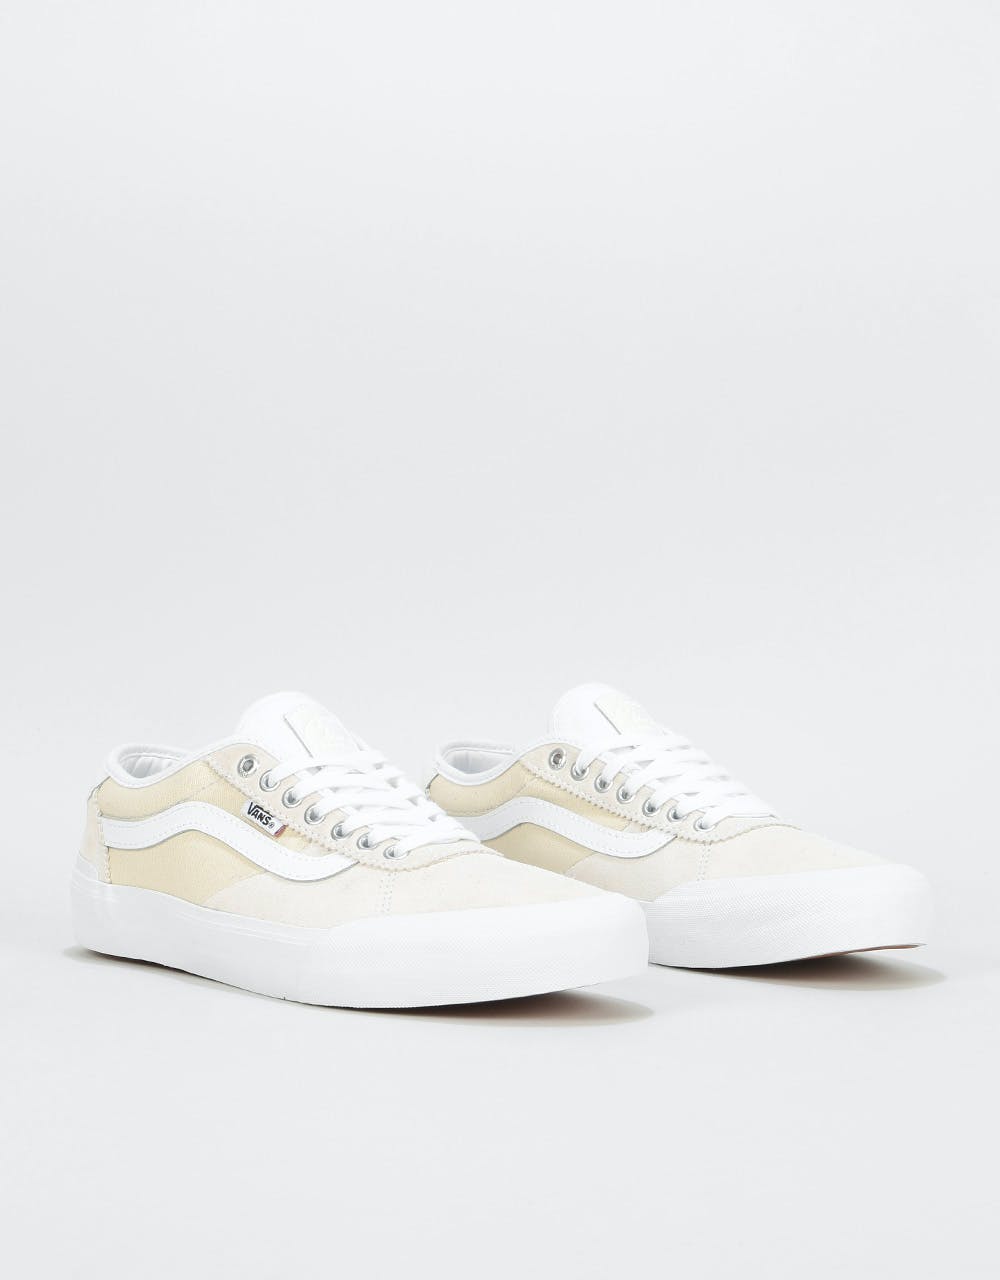 Vans Chima Pro 2 Skate Shoes - White/White